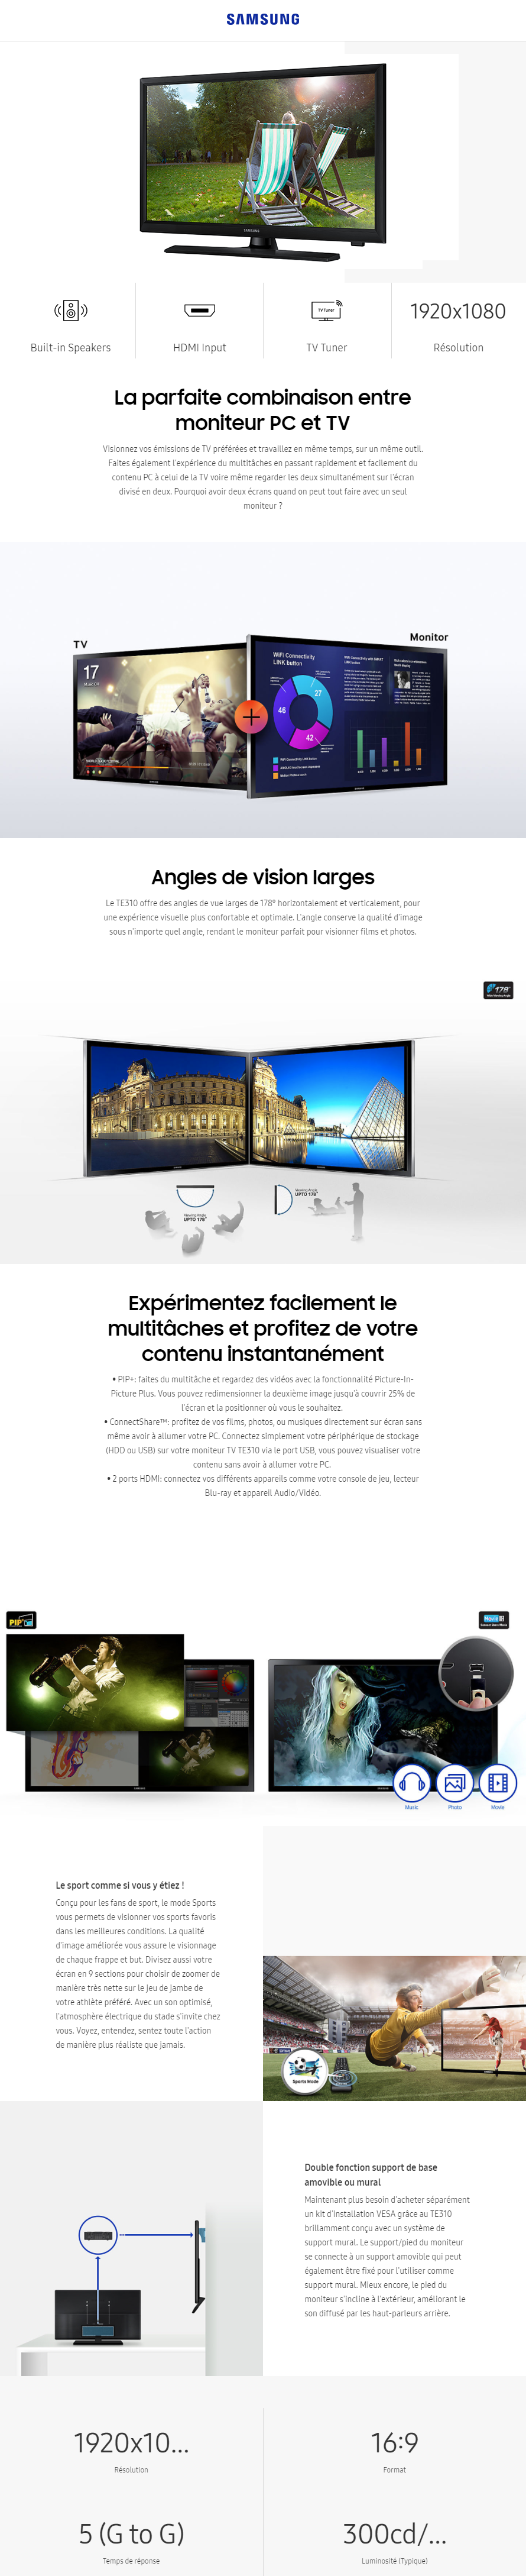 Acheter Monitor Samsung TV LED 24" TNT Serie 3 (LT24E310EW/EN) Maroc